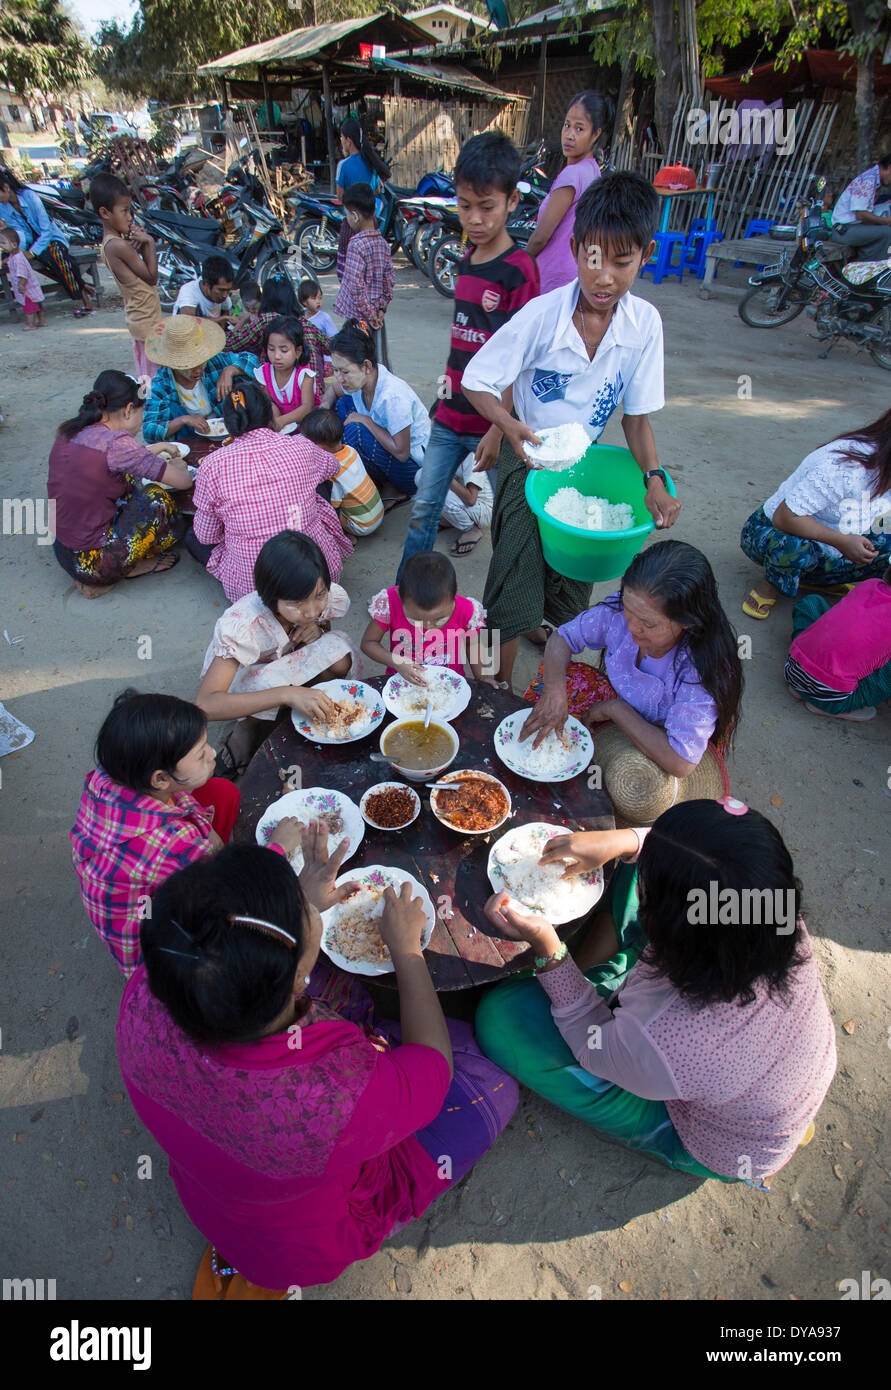 Mandalay Myanmar Burma Asien Sagaing Feier bunte Kultur Gerichte verteilen Familie Essen Fiesta Essen kostenlos Homosexuell h Stockfoto